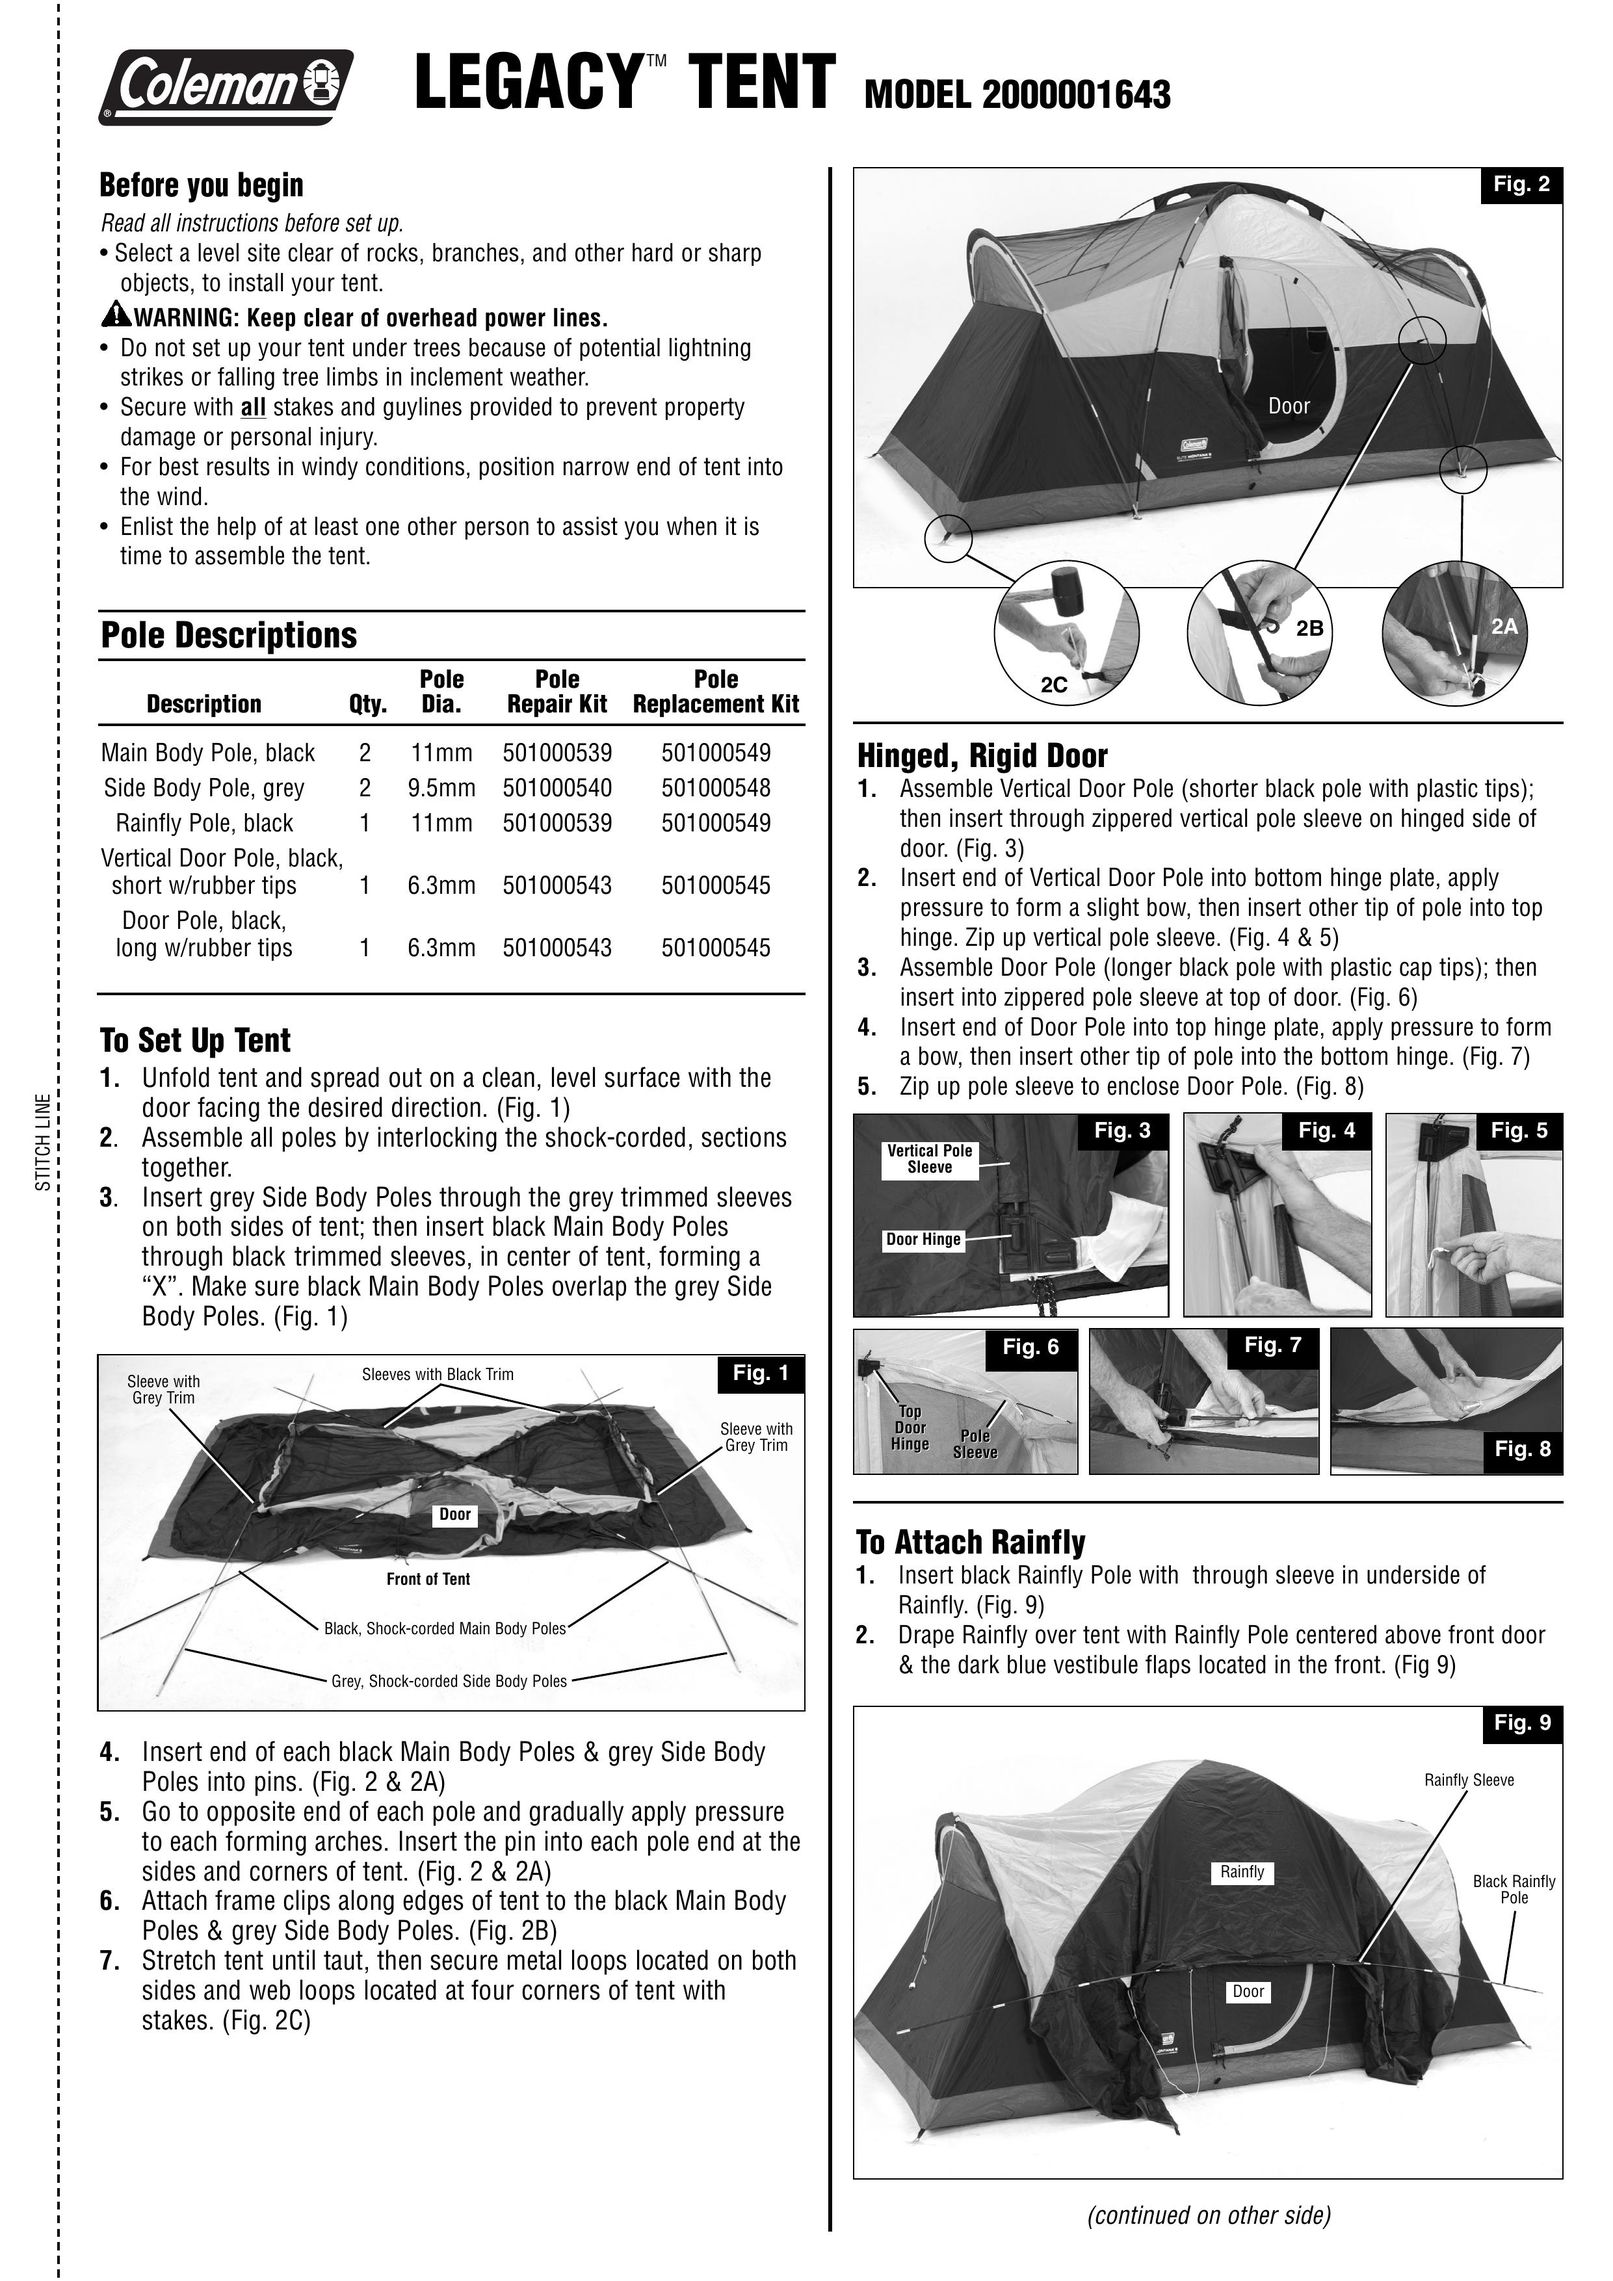 Coleman 2000001643 Tent User Manual